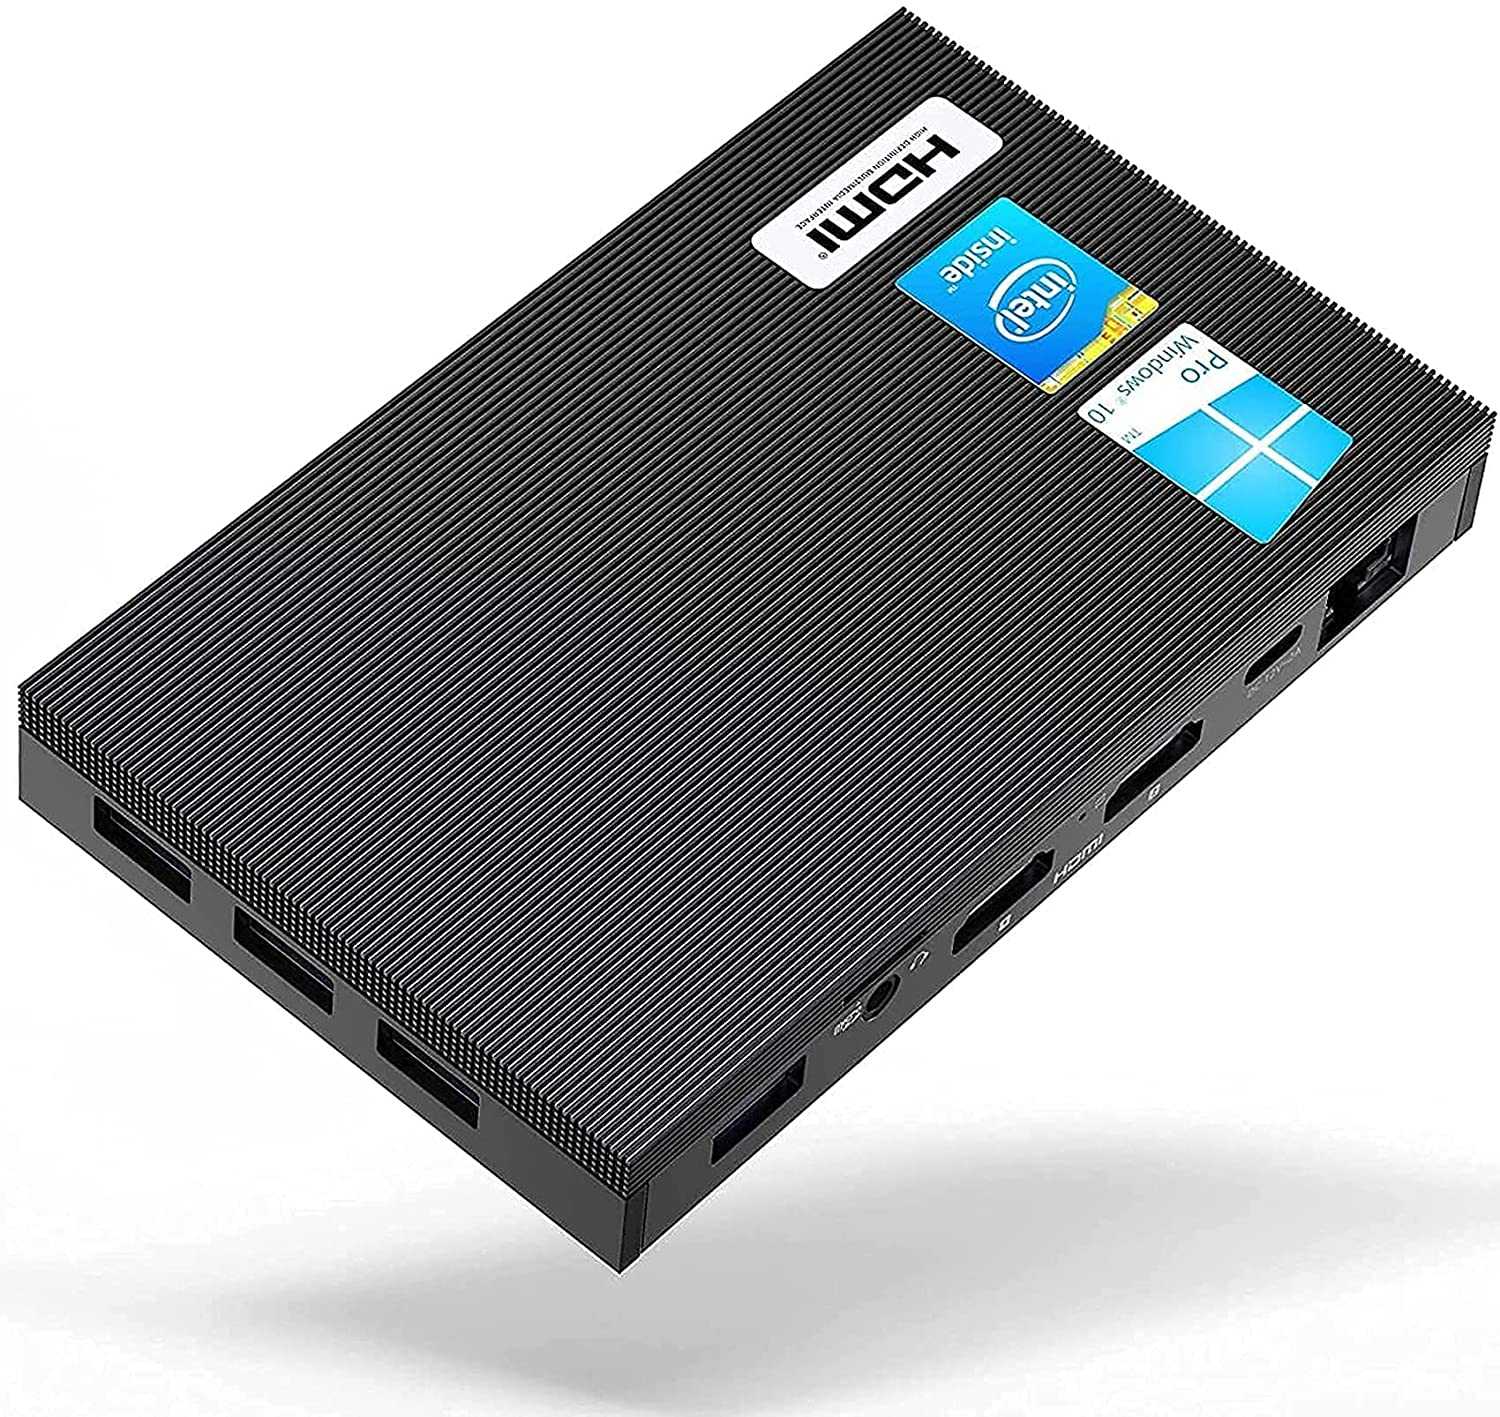 MeLE Quieter2Q: Mini PC Fanless ad un prezzo mai visto prima su Amazon